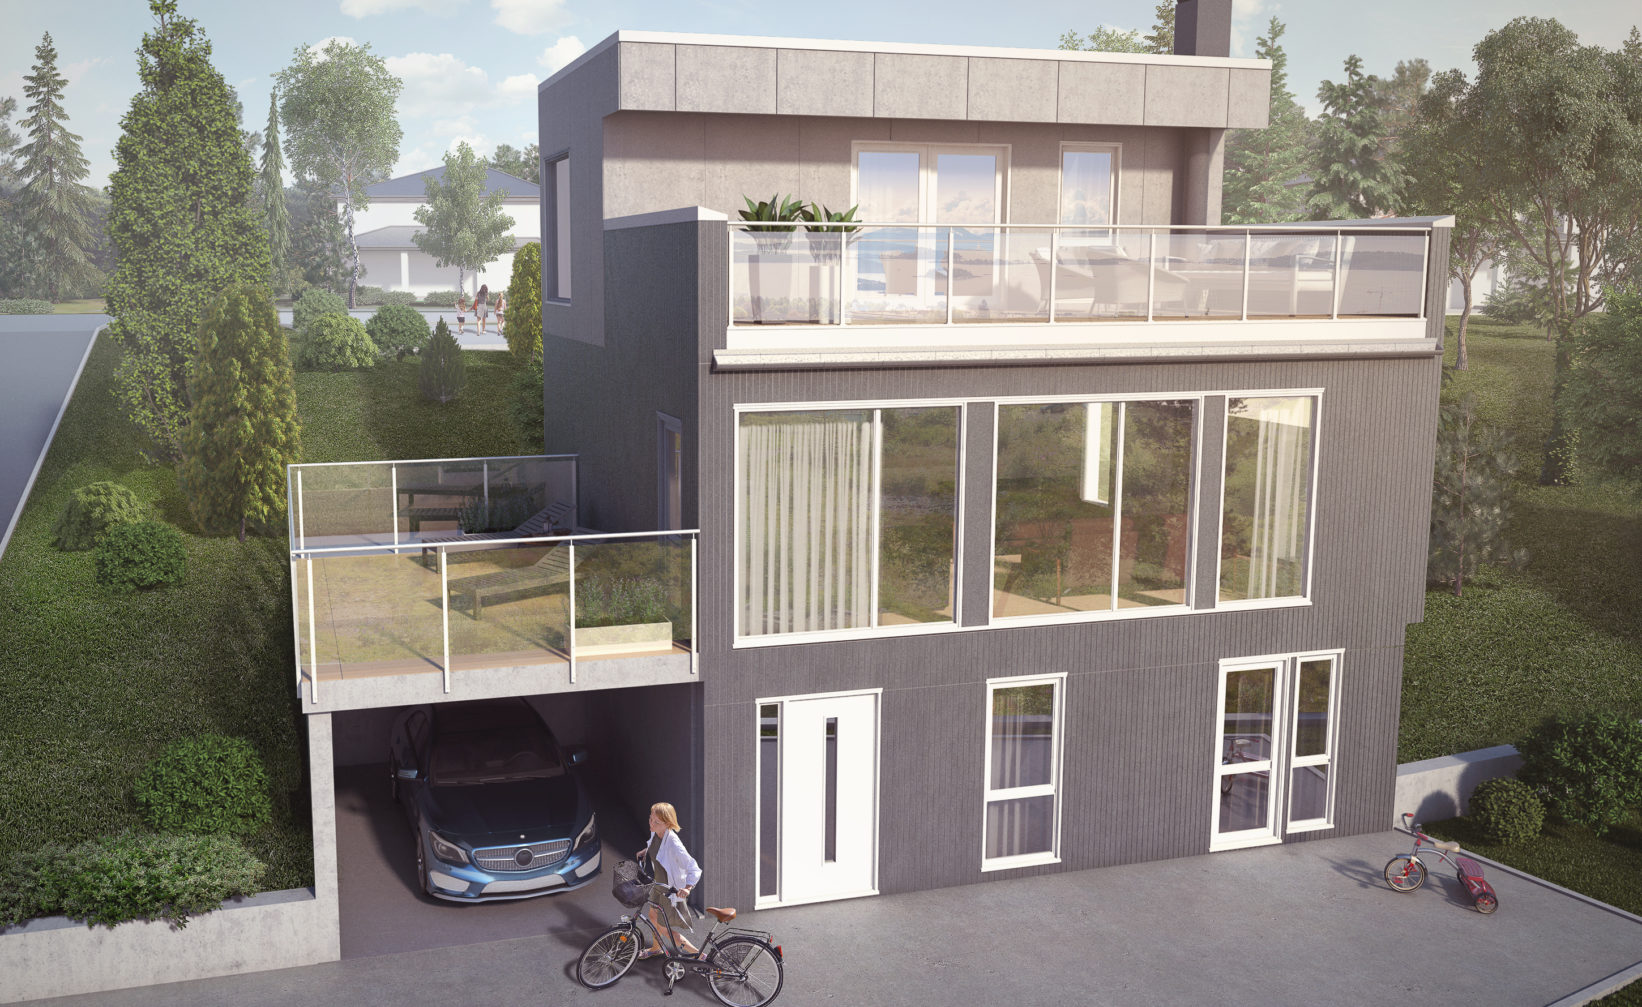 En visuell gjengivelse av et moderne hus med en person på en sykkel for salg i 2017.